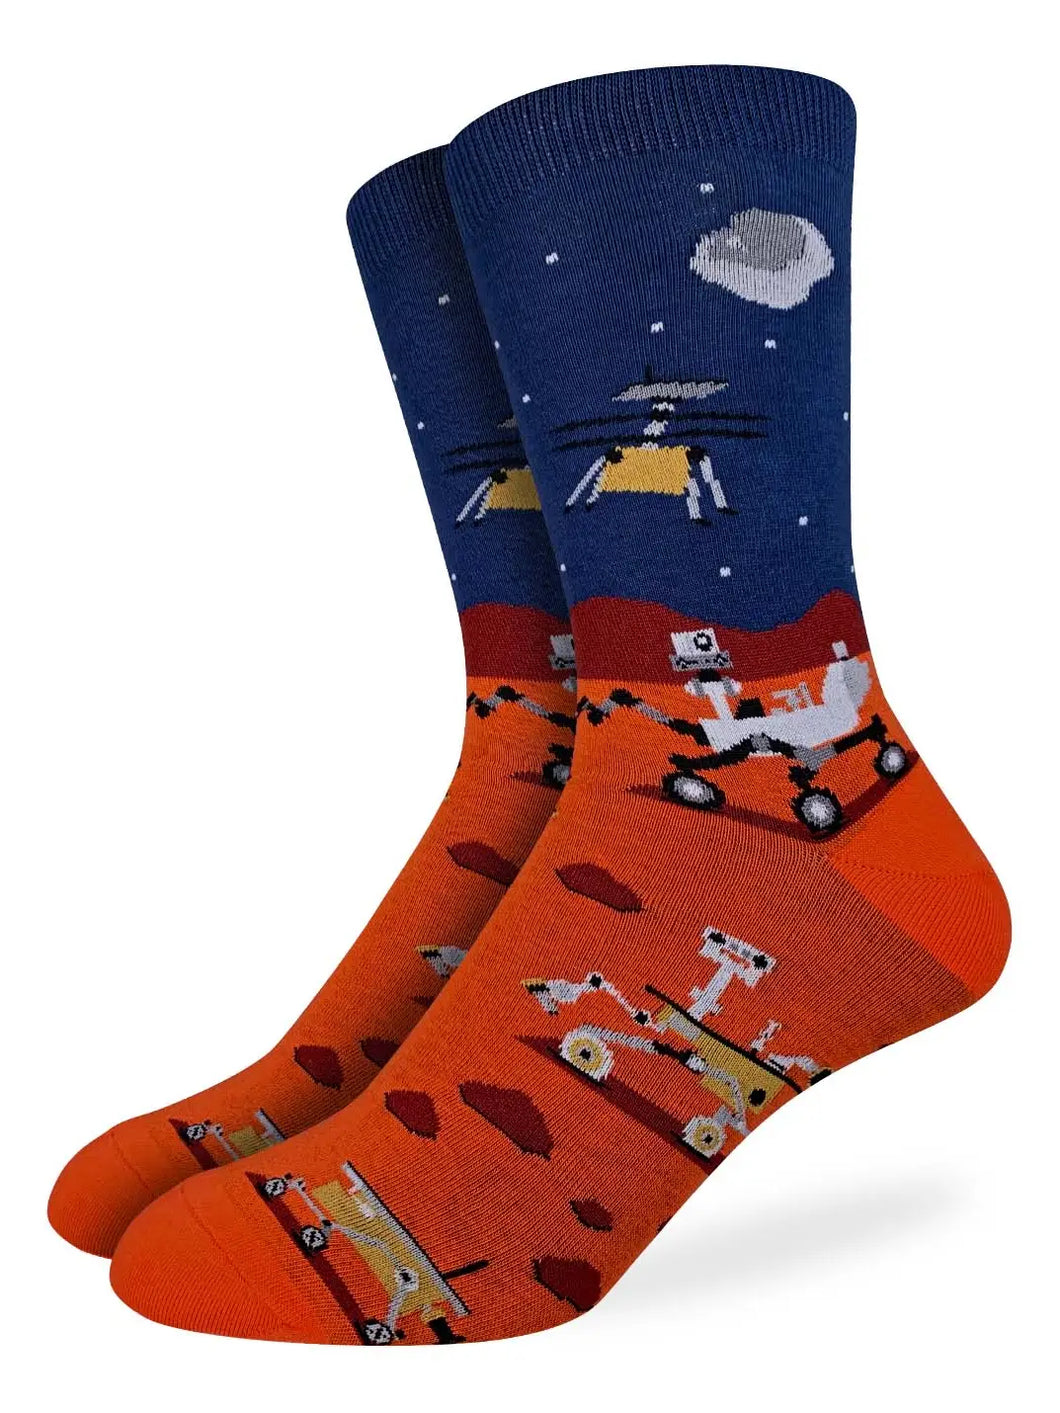 Mars Rover Socks